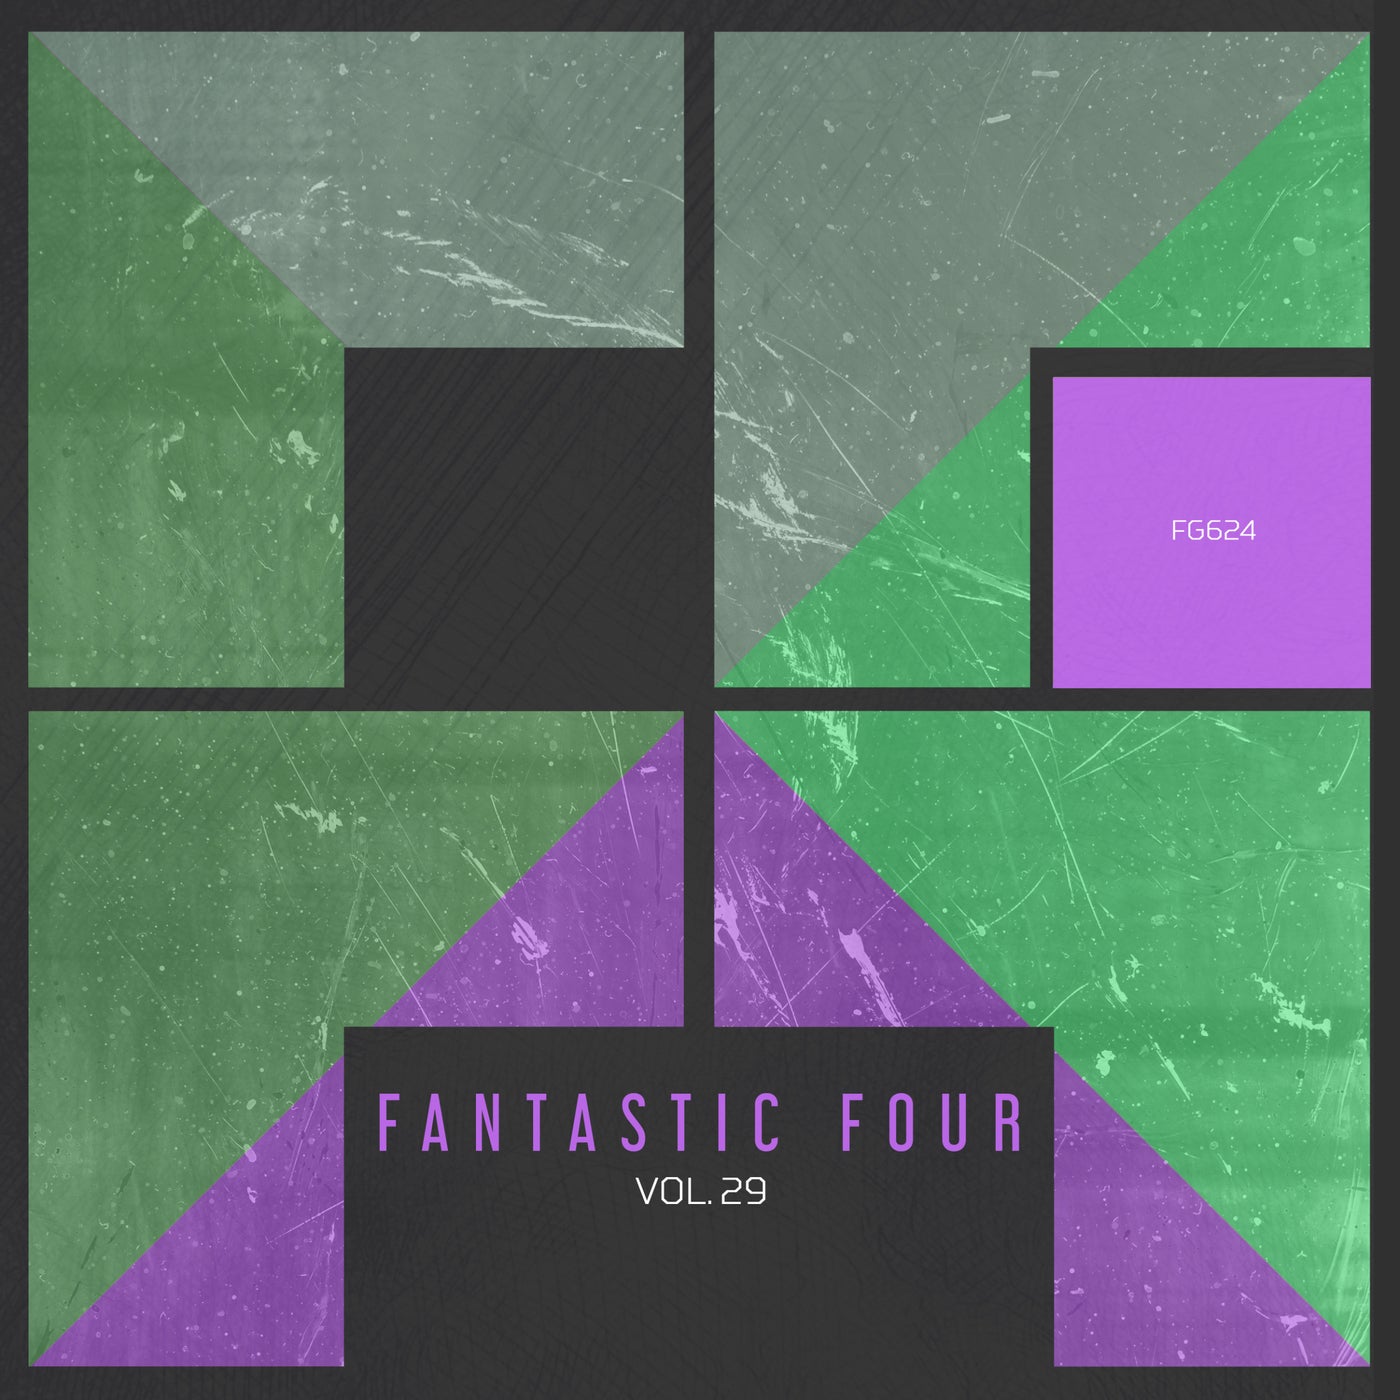 Fantastic Four, Vol. 29